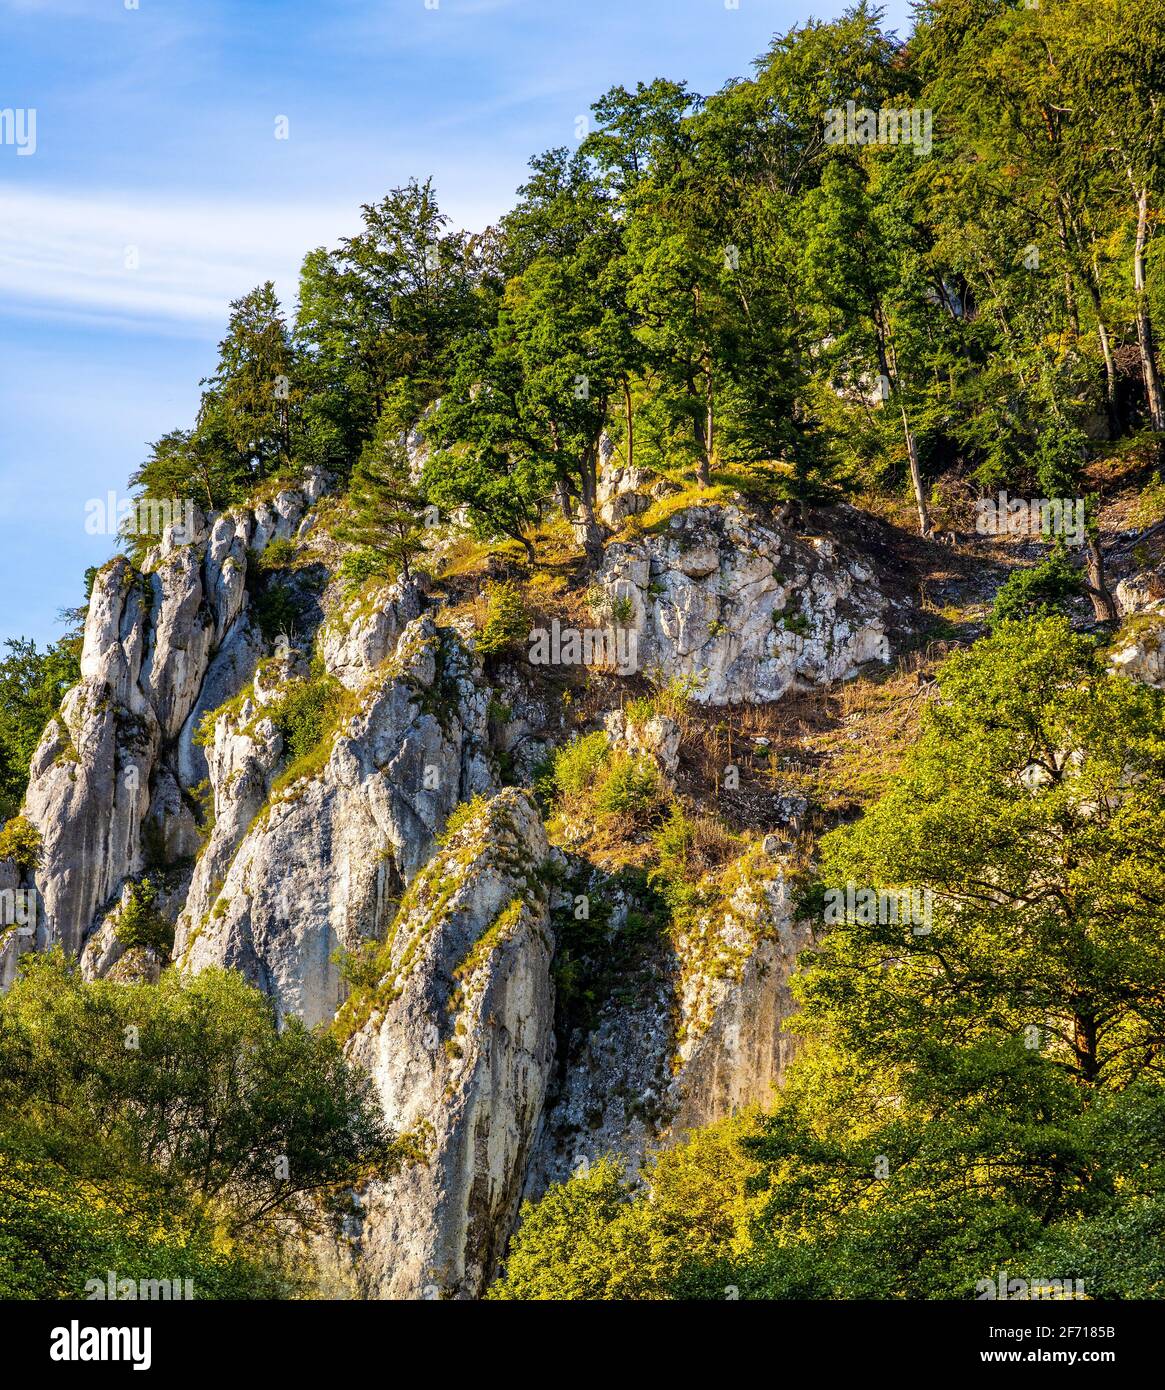 Crown rocks - Skaly Koronne - Jurassic massif with Glove Rock - Rekawica -  in Pradnik creek valley of Cracow-Czestochowa upland in Ojcow in Poland  Stock Photo - Alamy